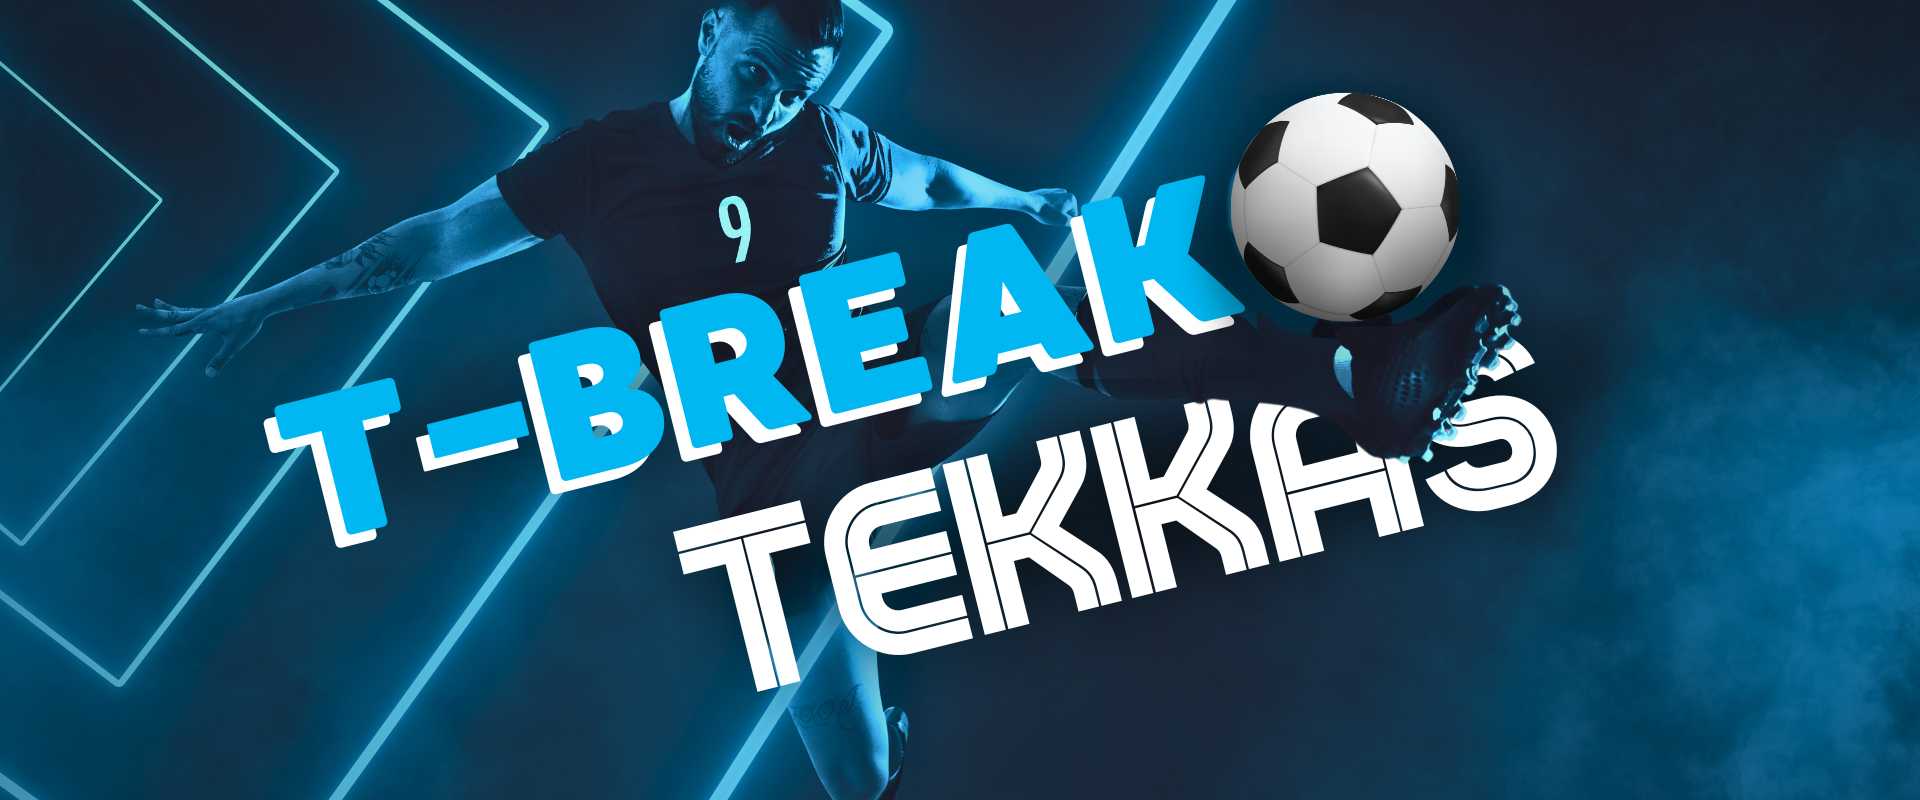 t-break tekkas